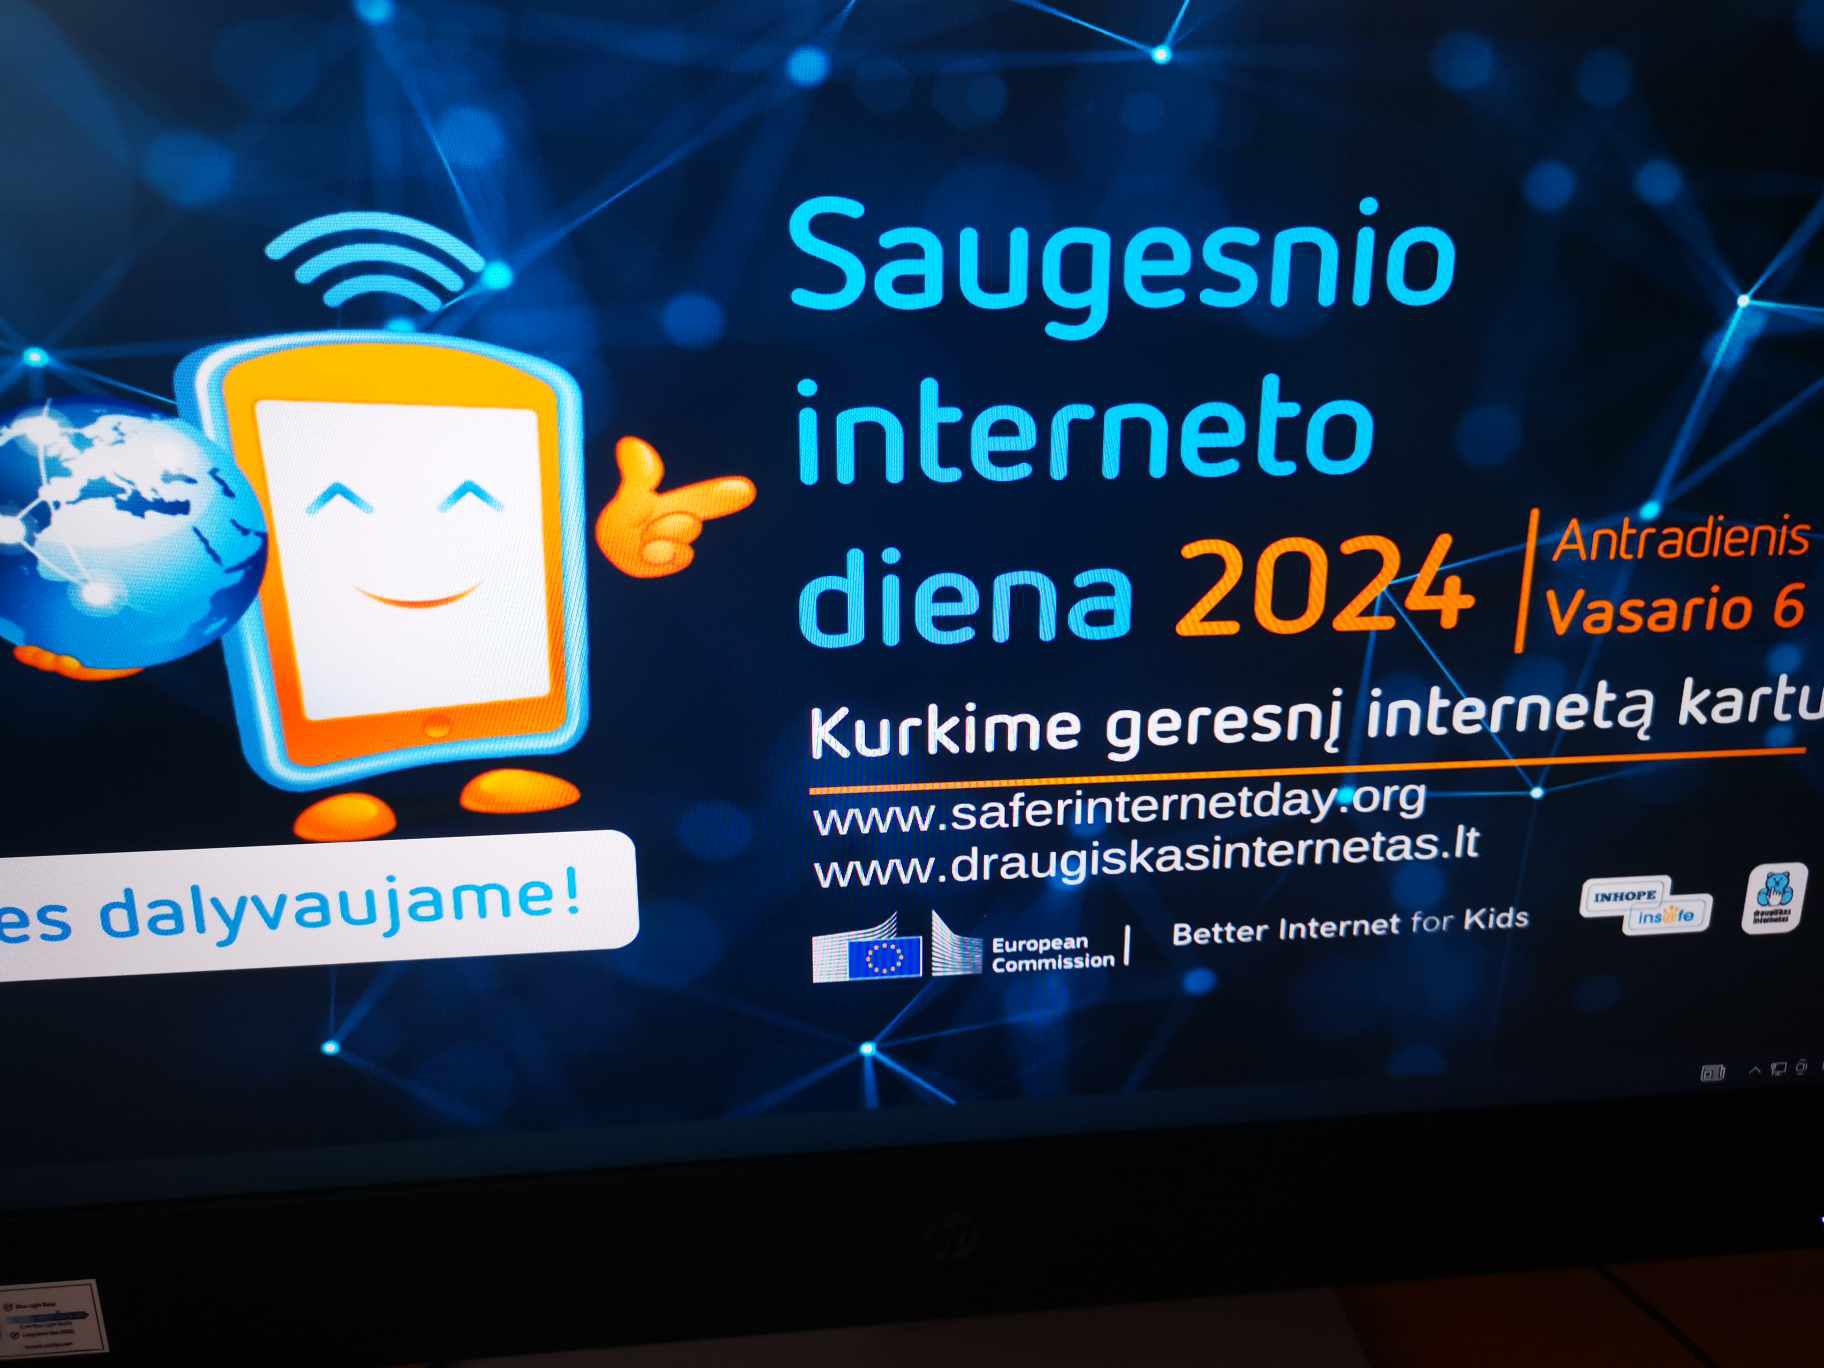 You are currently viewing Saugesnio interneto diena Staškūniškio bibliotekoje